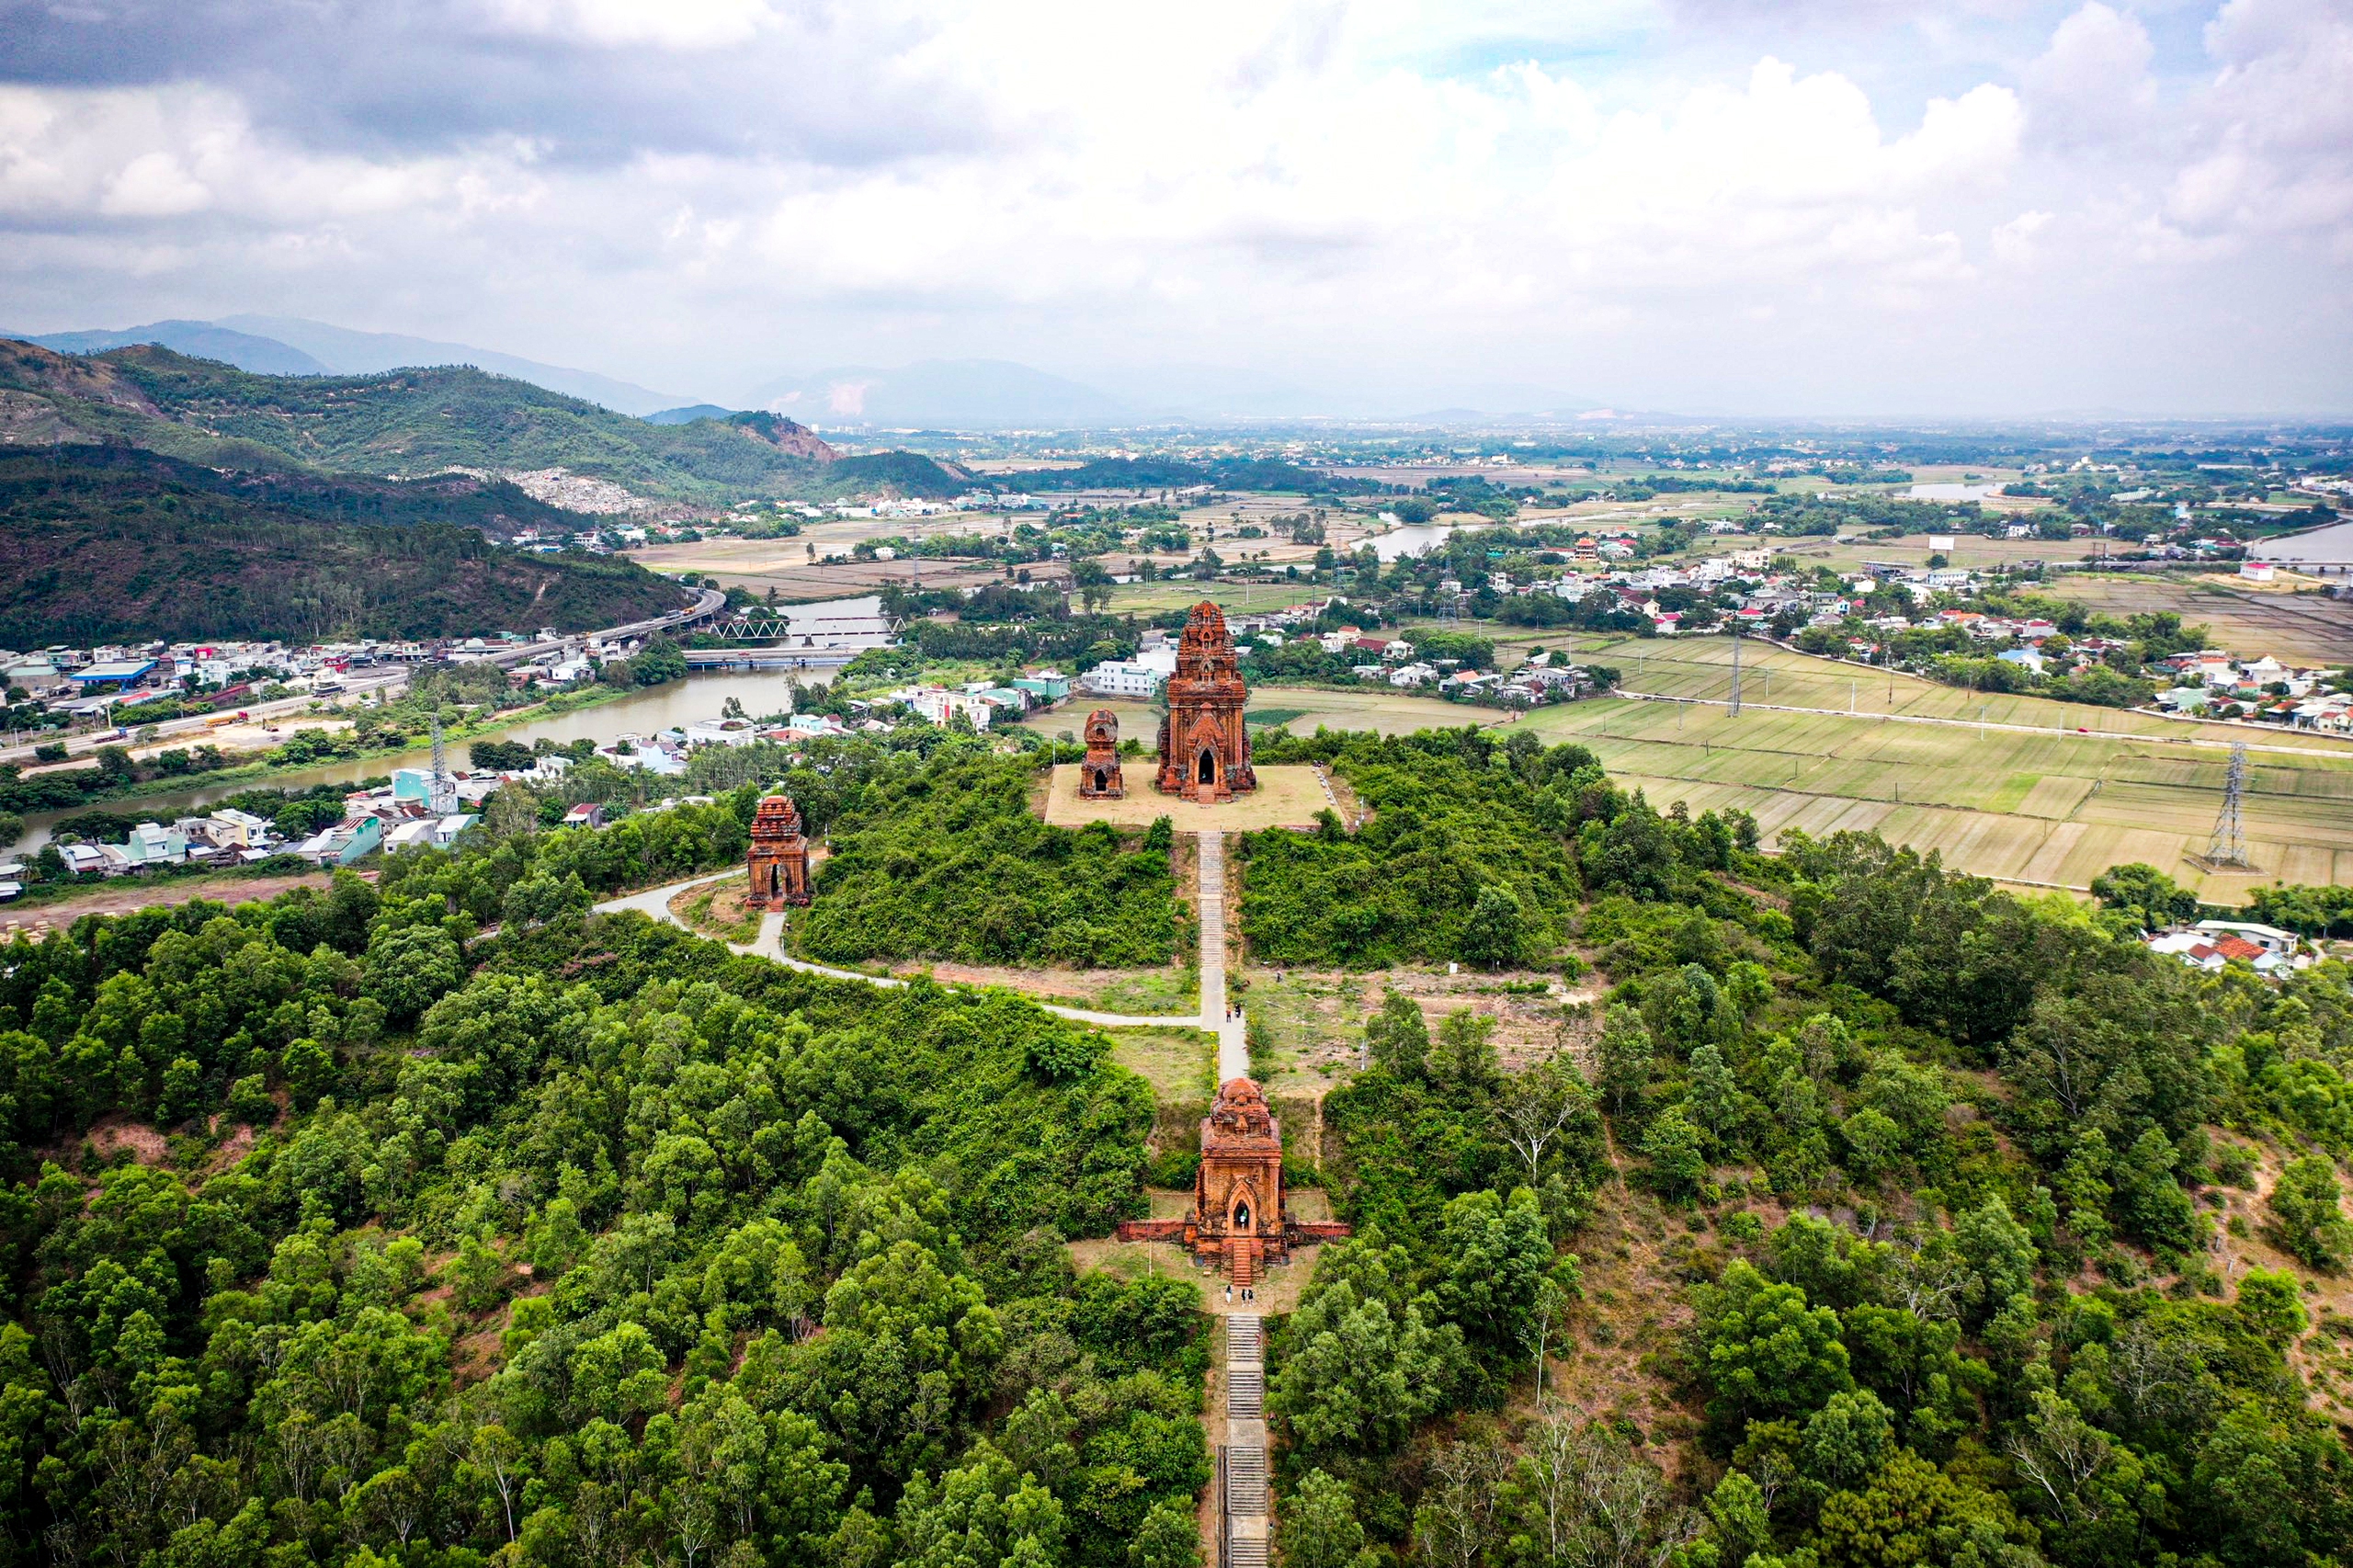 Theo lãnh đạo Bảo tàng Tổng hợp Bình Định, giai đoạn chuyển kinh đô về Bình Định (thế kỷ 11), người Chăm đã đưa đền tháp của mình lên đỉnh các quả đồi để hút khung cảnh thiên nhiên, bao quanh thành nền cho các kiến trúc ngự bên trên. Vì thế, kiến trúc Chăm Pa ở Bình Định rất đồ sộ và hùng vĩ